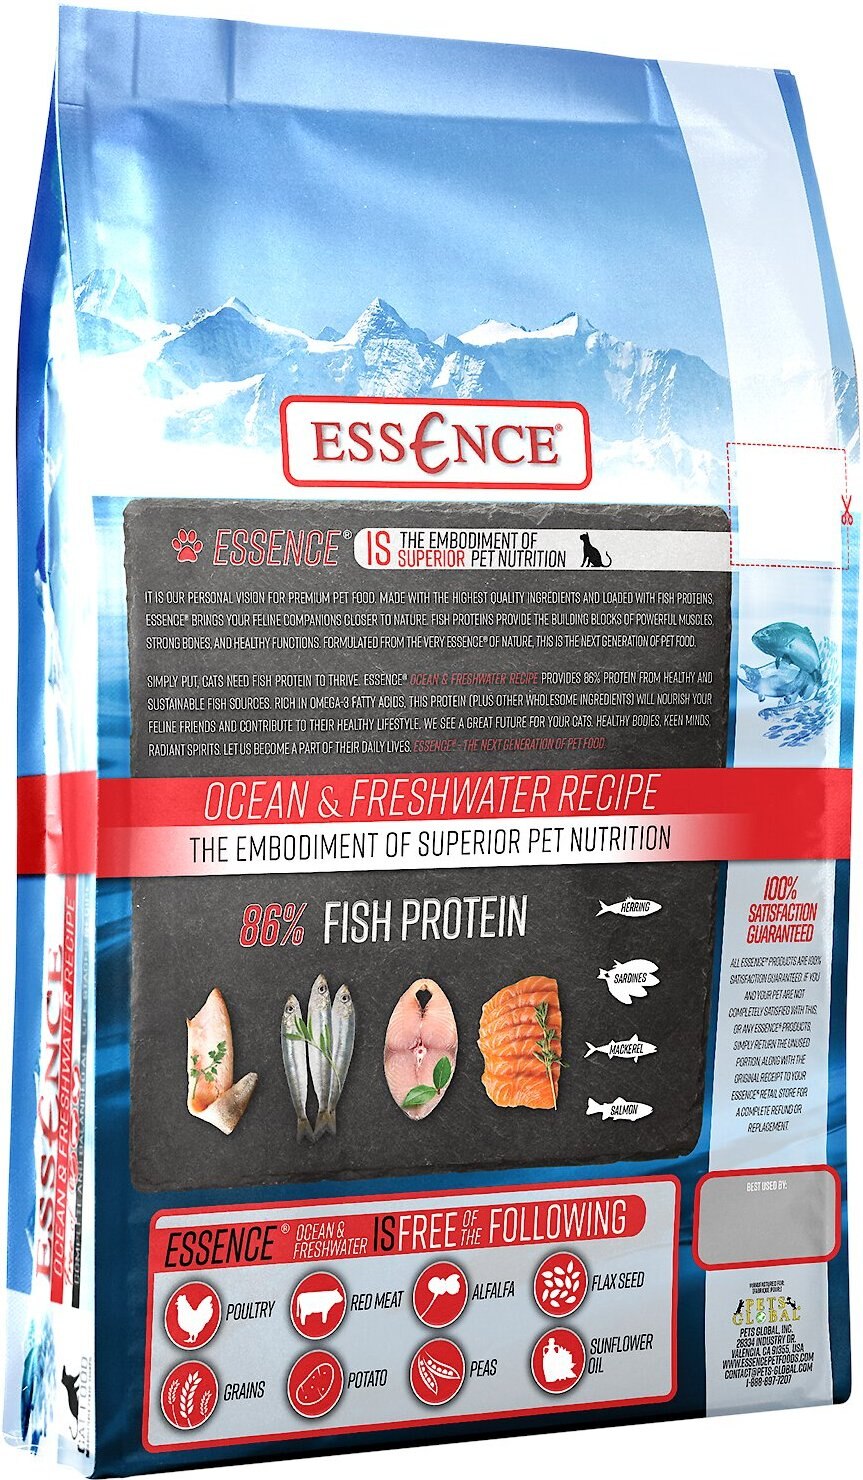 ESSENCE Ocean & Freshwater Recipe GrainFree Dry Cat Food, 4lb bag